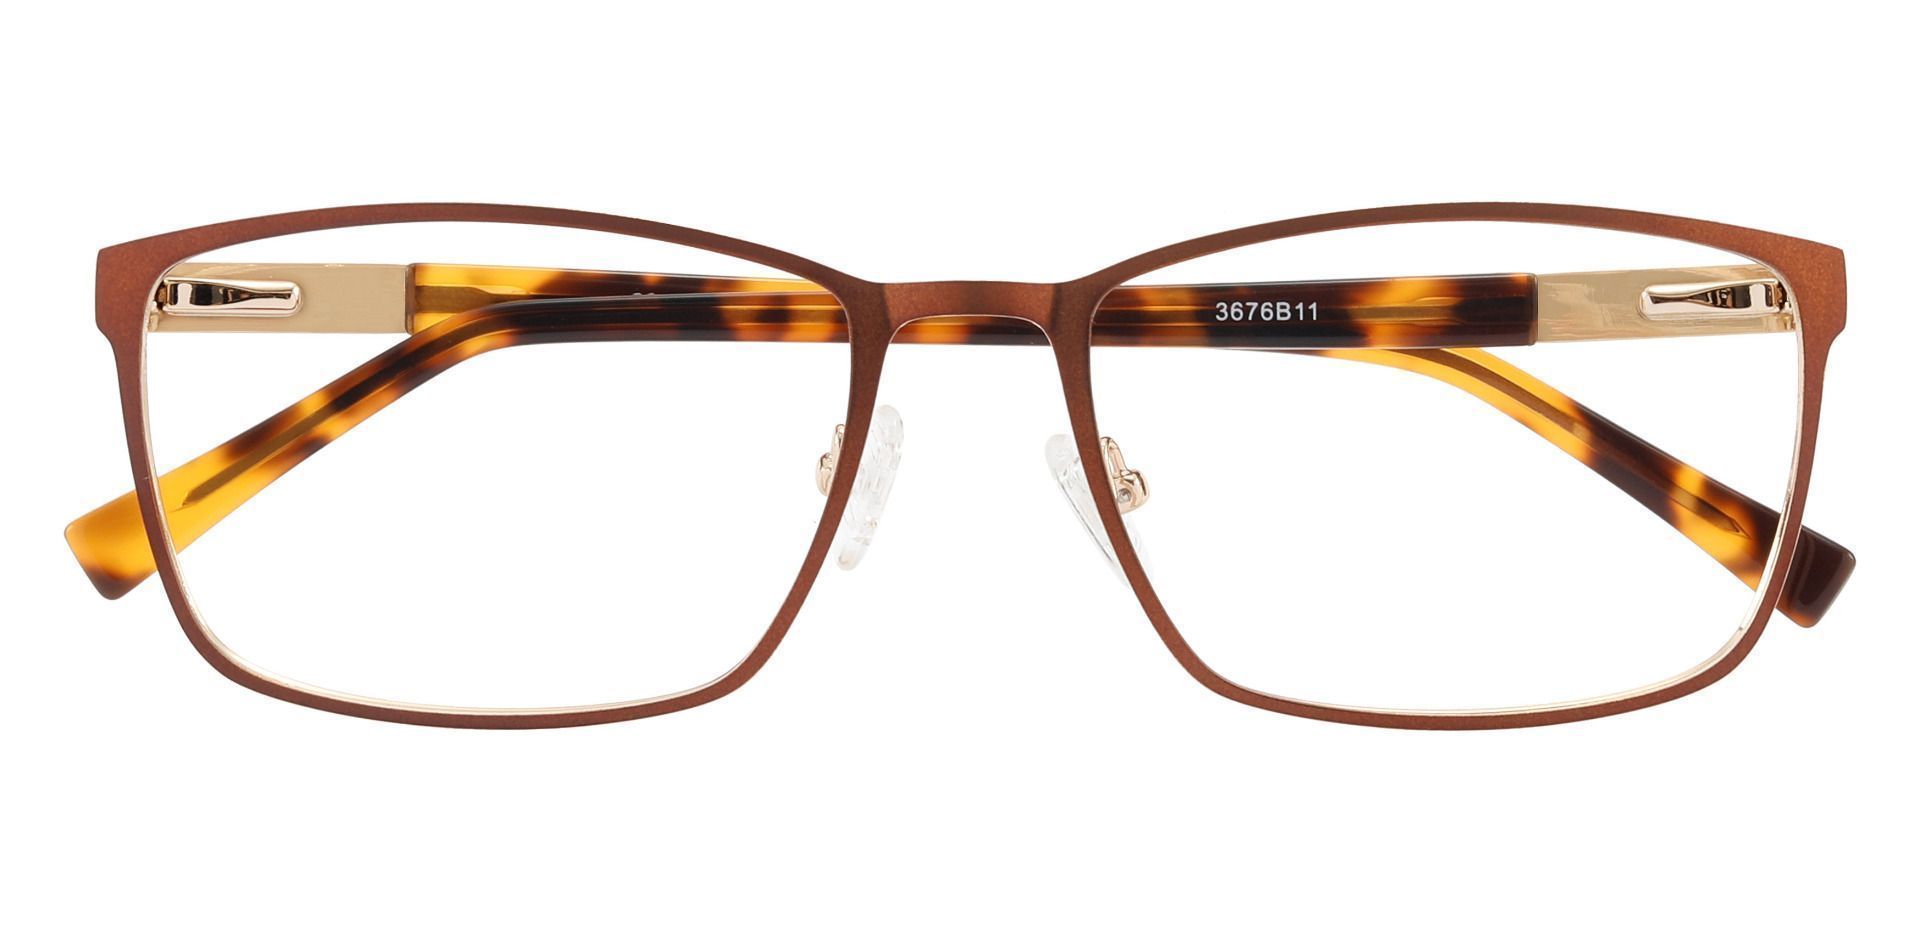 Cornell Rectangle Prescription Glasses - Brown